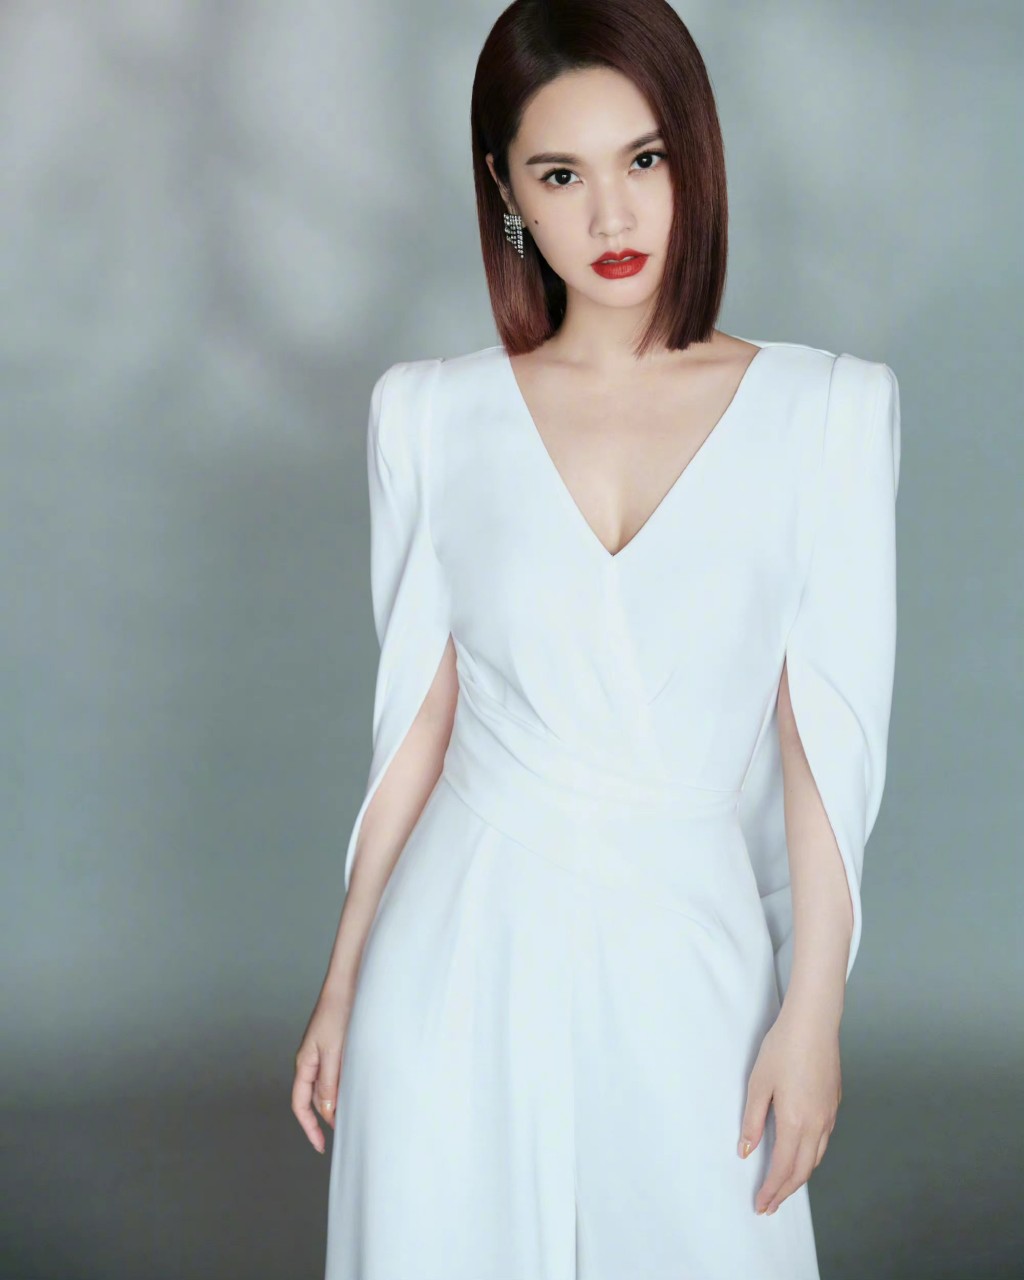 杨丞琳白色套装大气优雅写真图片